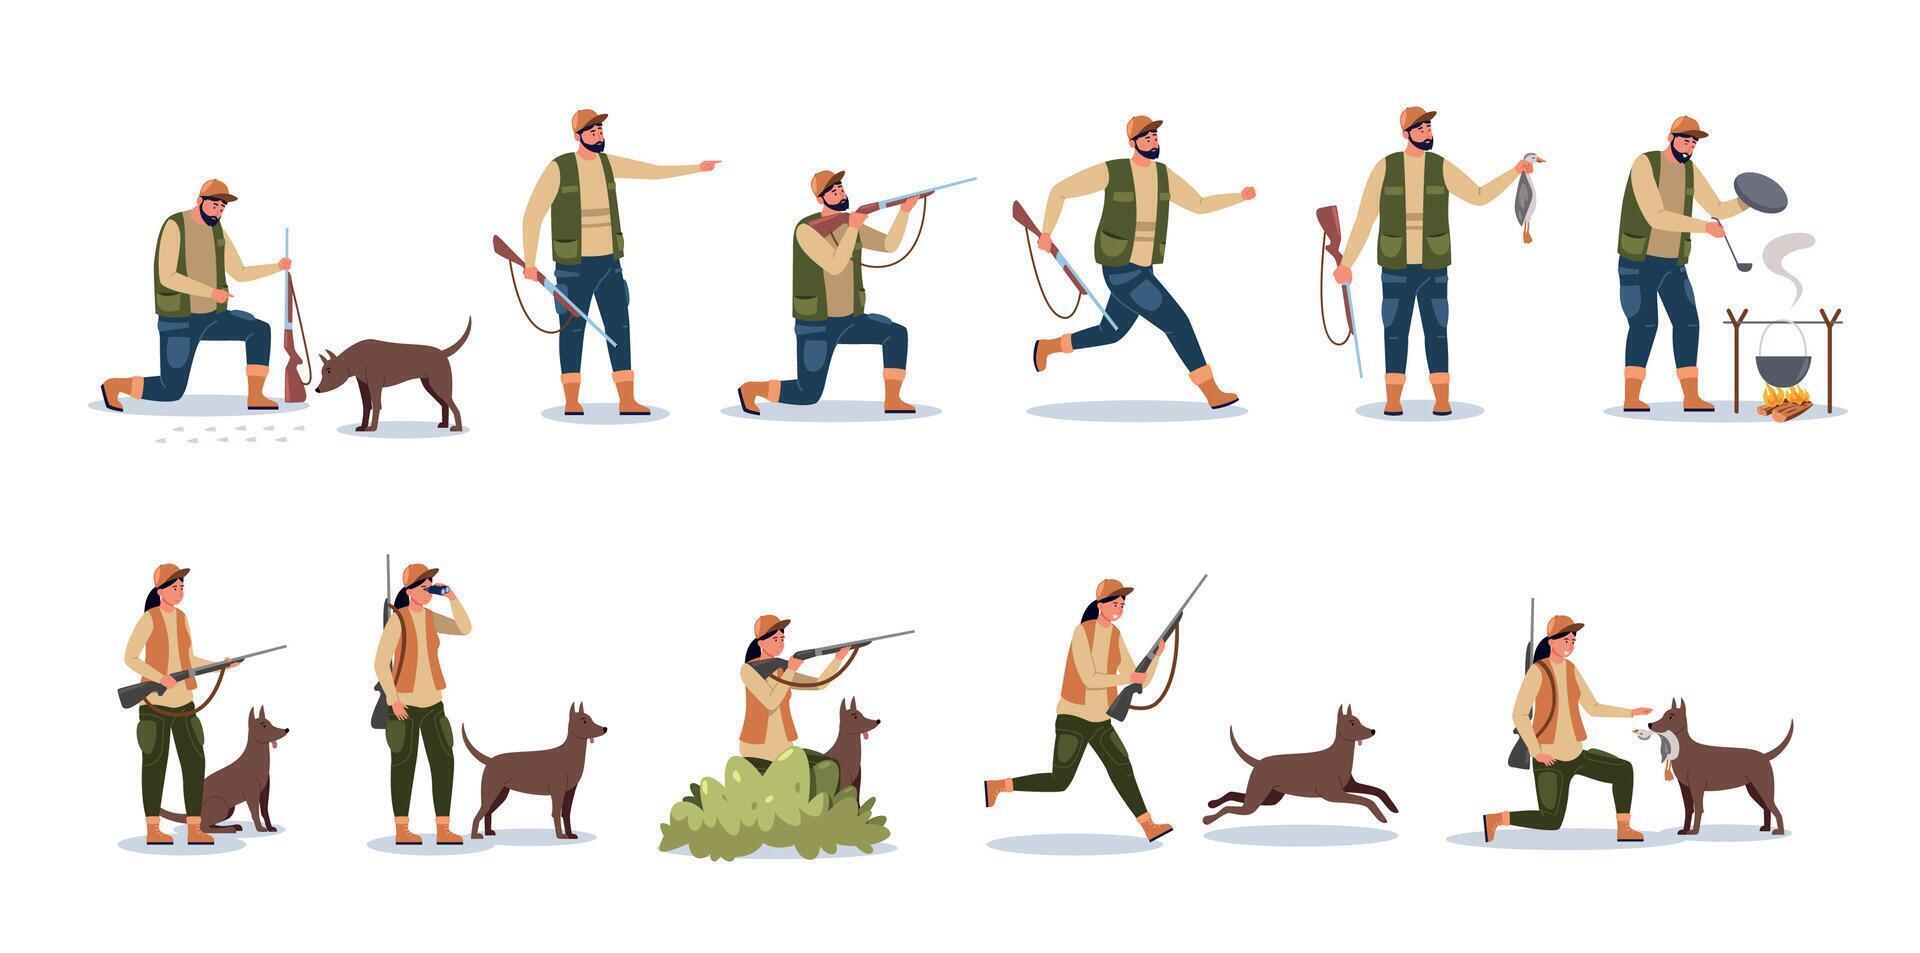 cazador personaje. dibujos animados persona con caza perro señalando arma, cazador masculino y hembra en camuflaje ropa con perro en bosque. vector conjunto